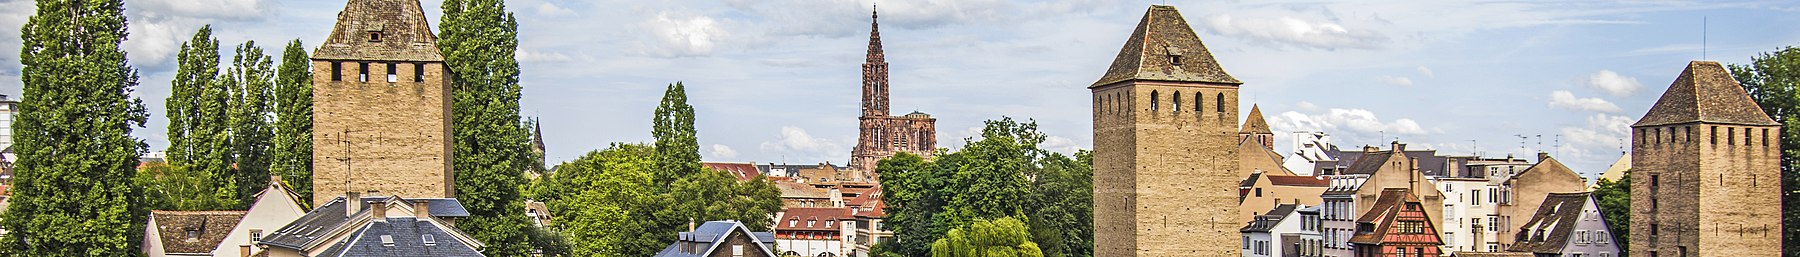 Banner Strasbourg - 2016 (29947489736).jpg